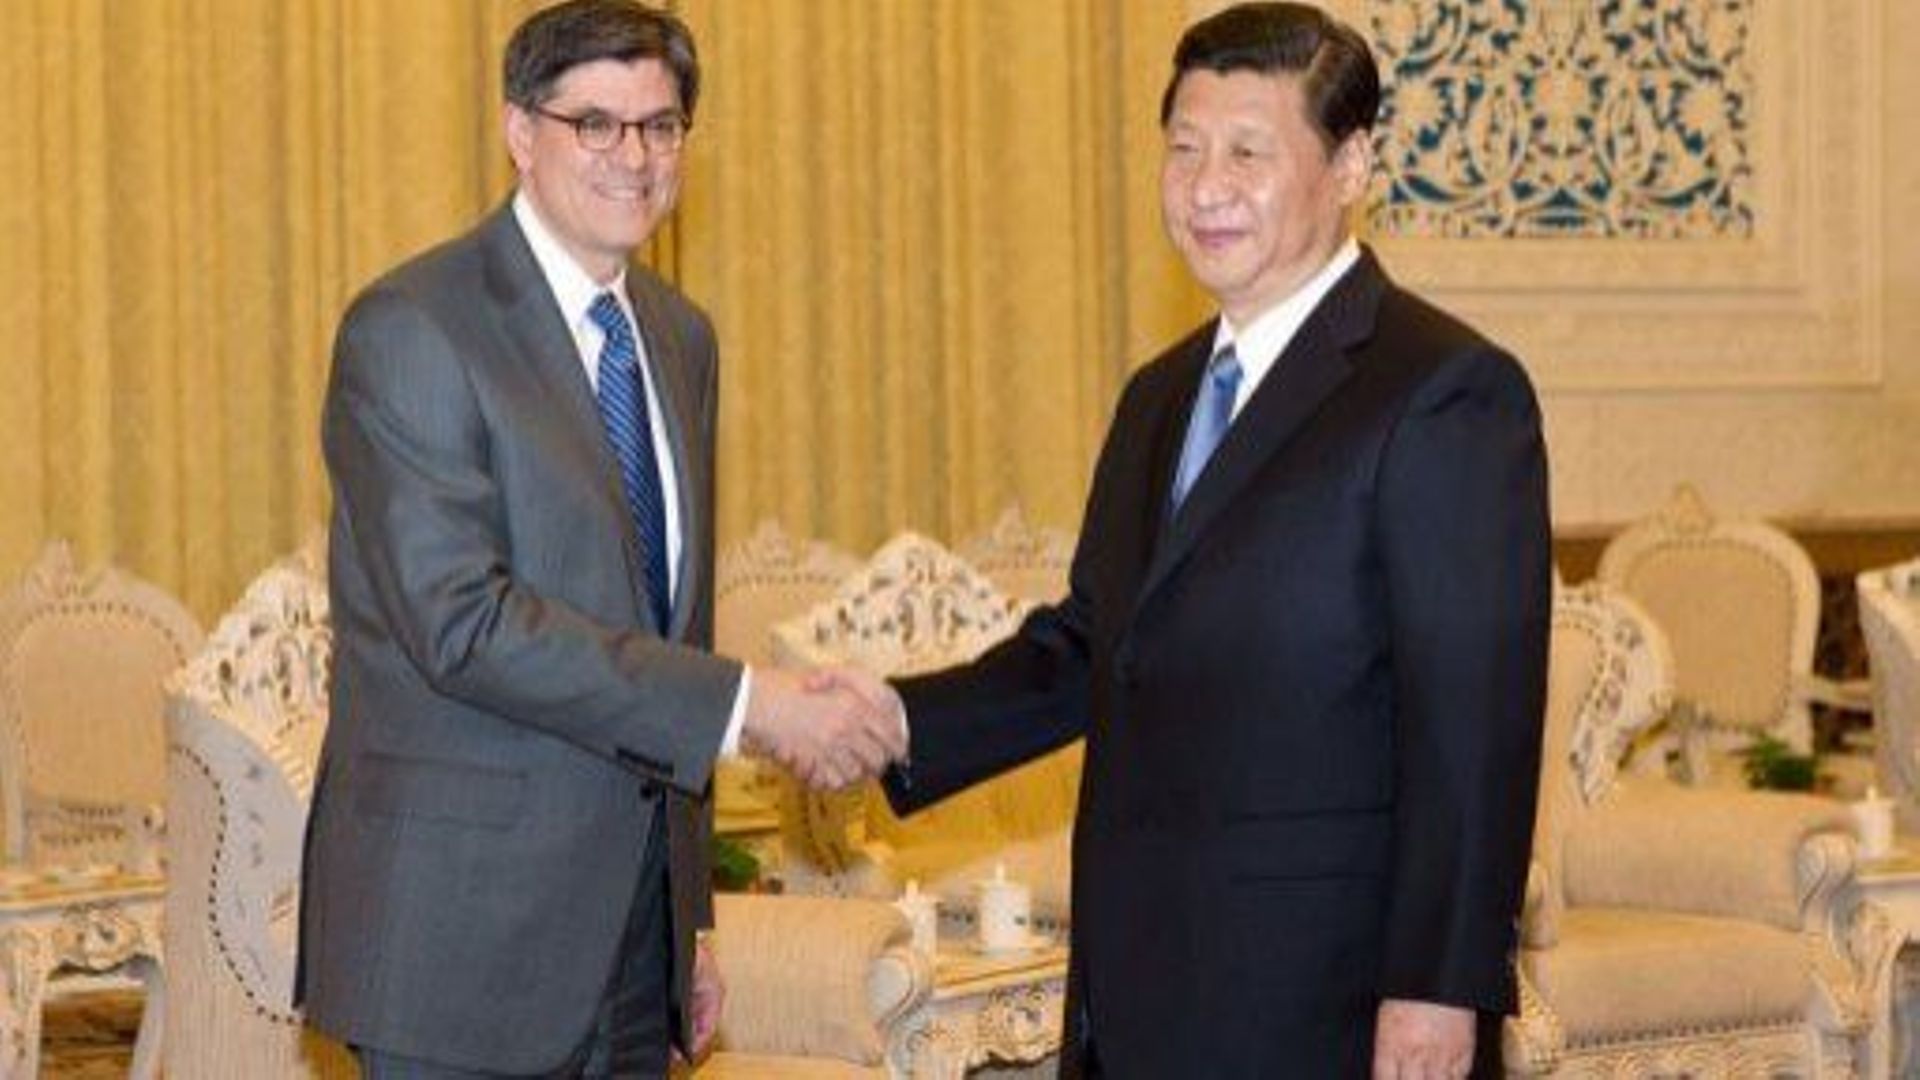 Le secrétaire américain au Trésor Jacob Lew accueilli par le nouveau président chinois, Xi Jinping, à Pékin le 19 mars 2013